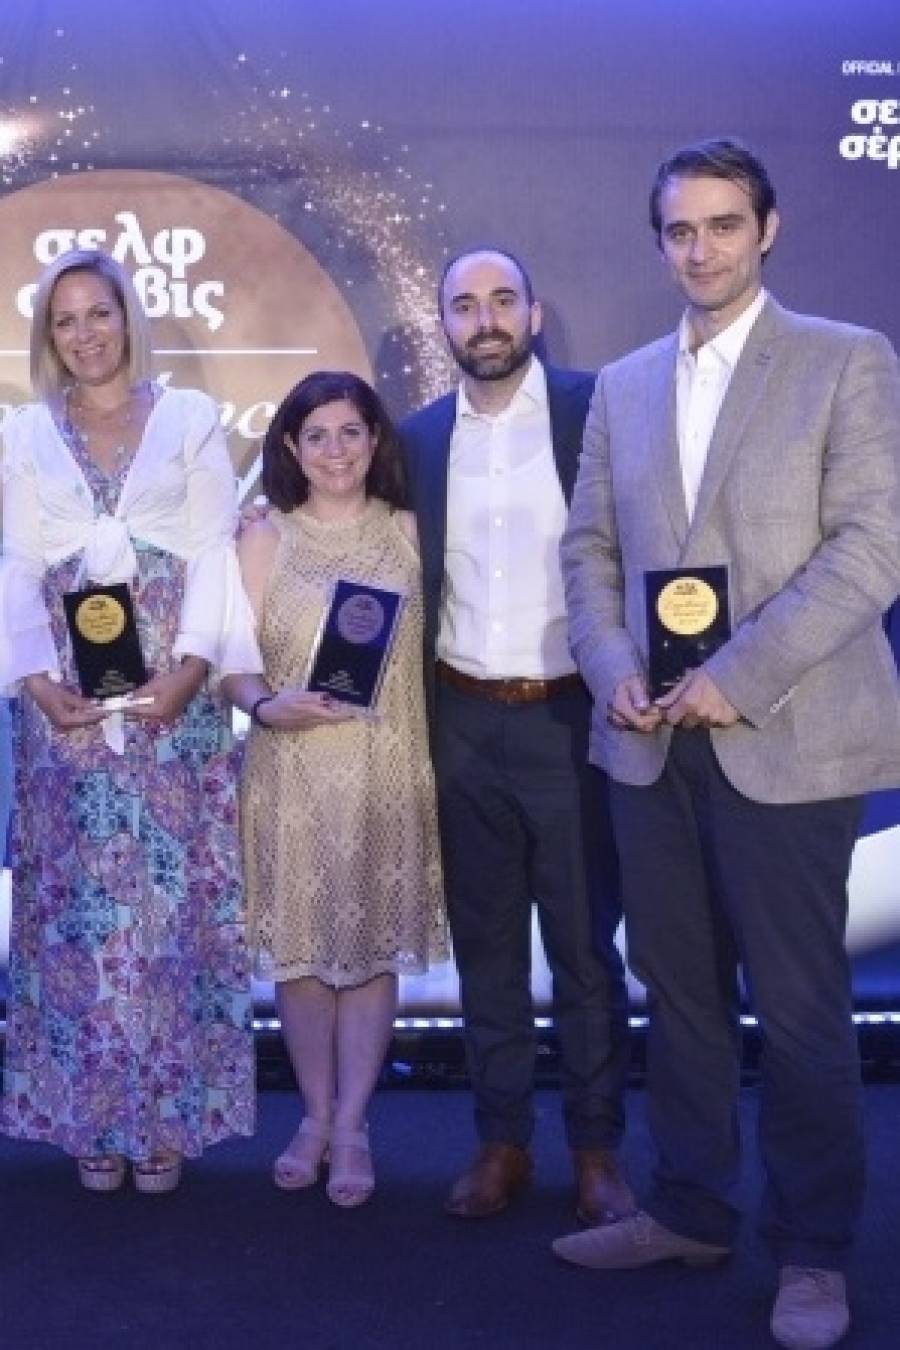 ΔΕΛΤΑ: 4 χρυσά βραβεία στα σελφ σέρβις Excellence Awards 2018